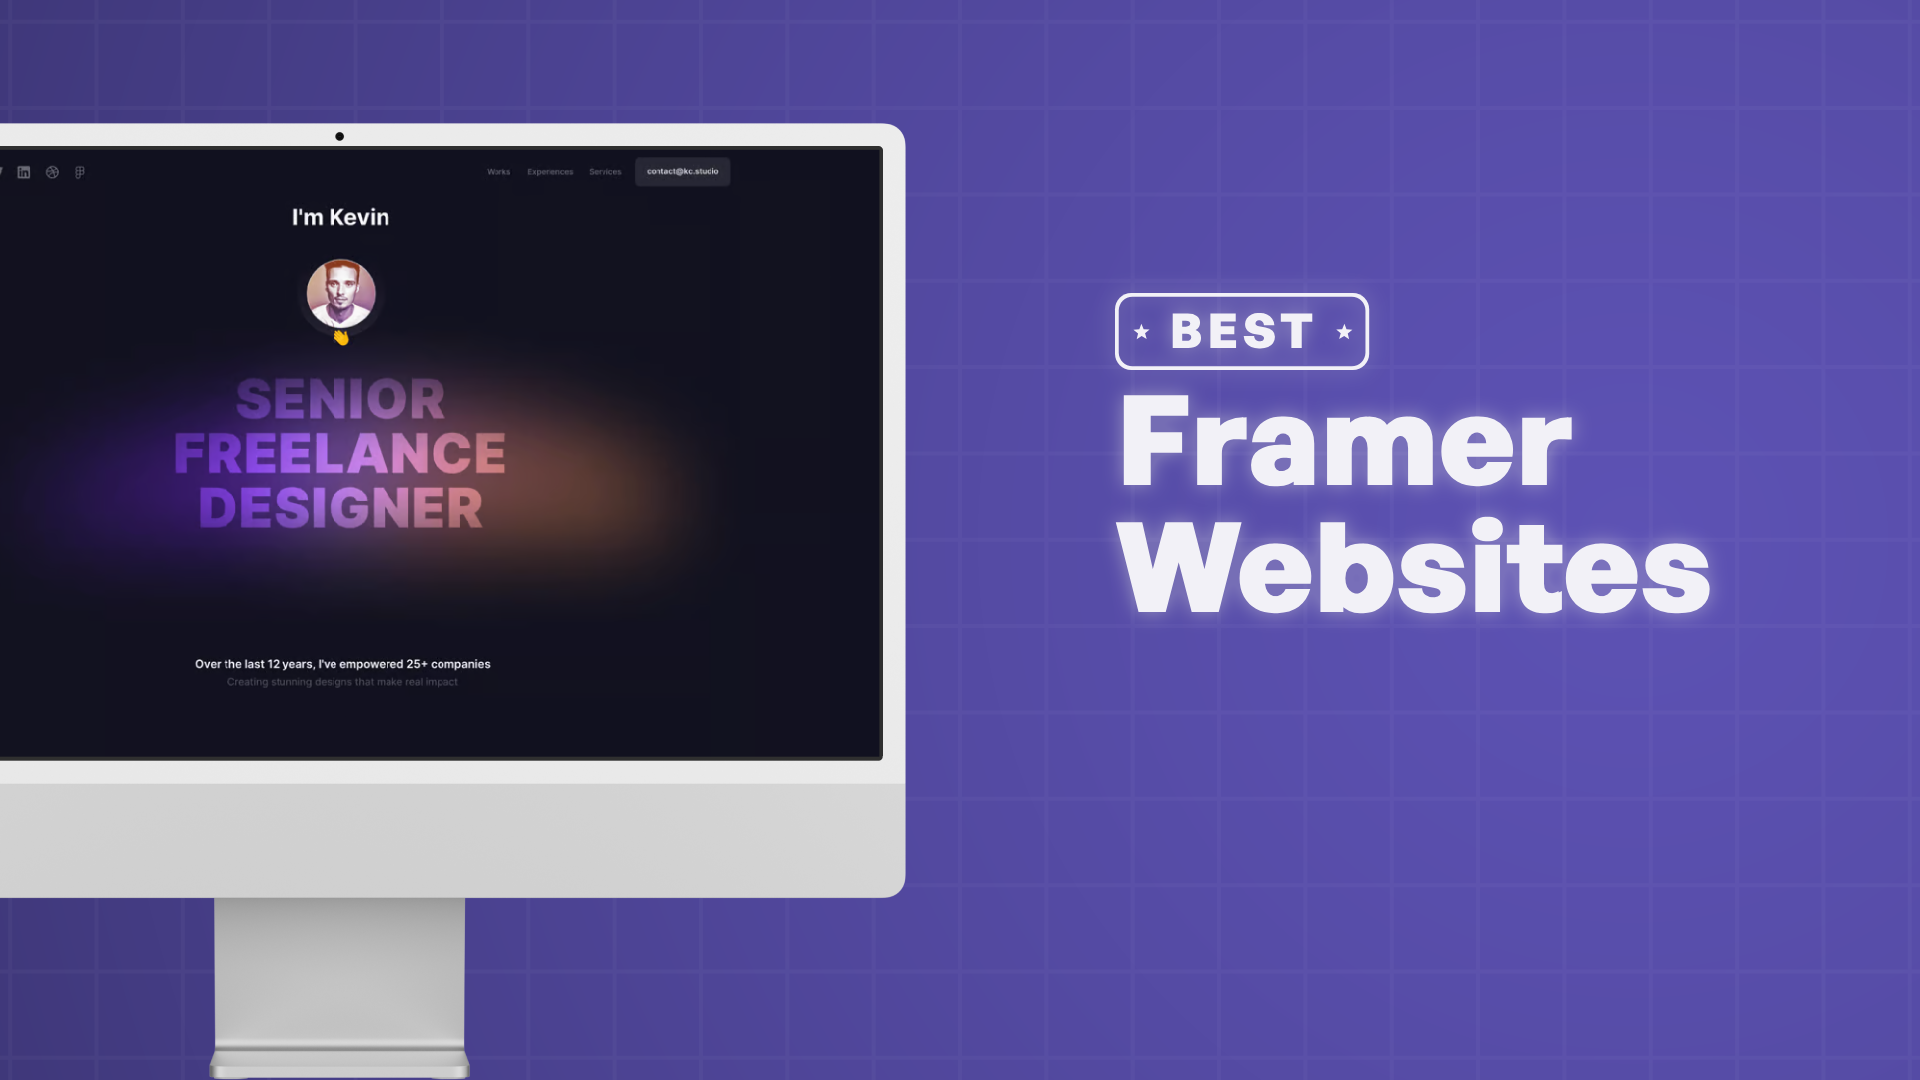 "Best Framer Websites" with screenshots of the best websites on Framer 